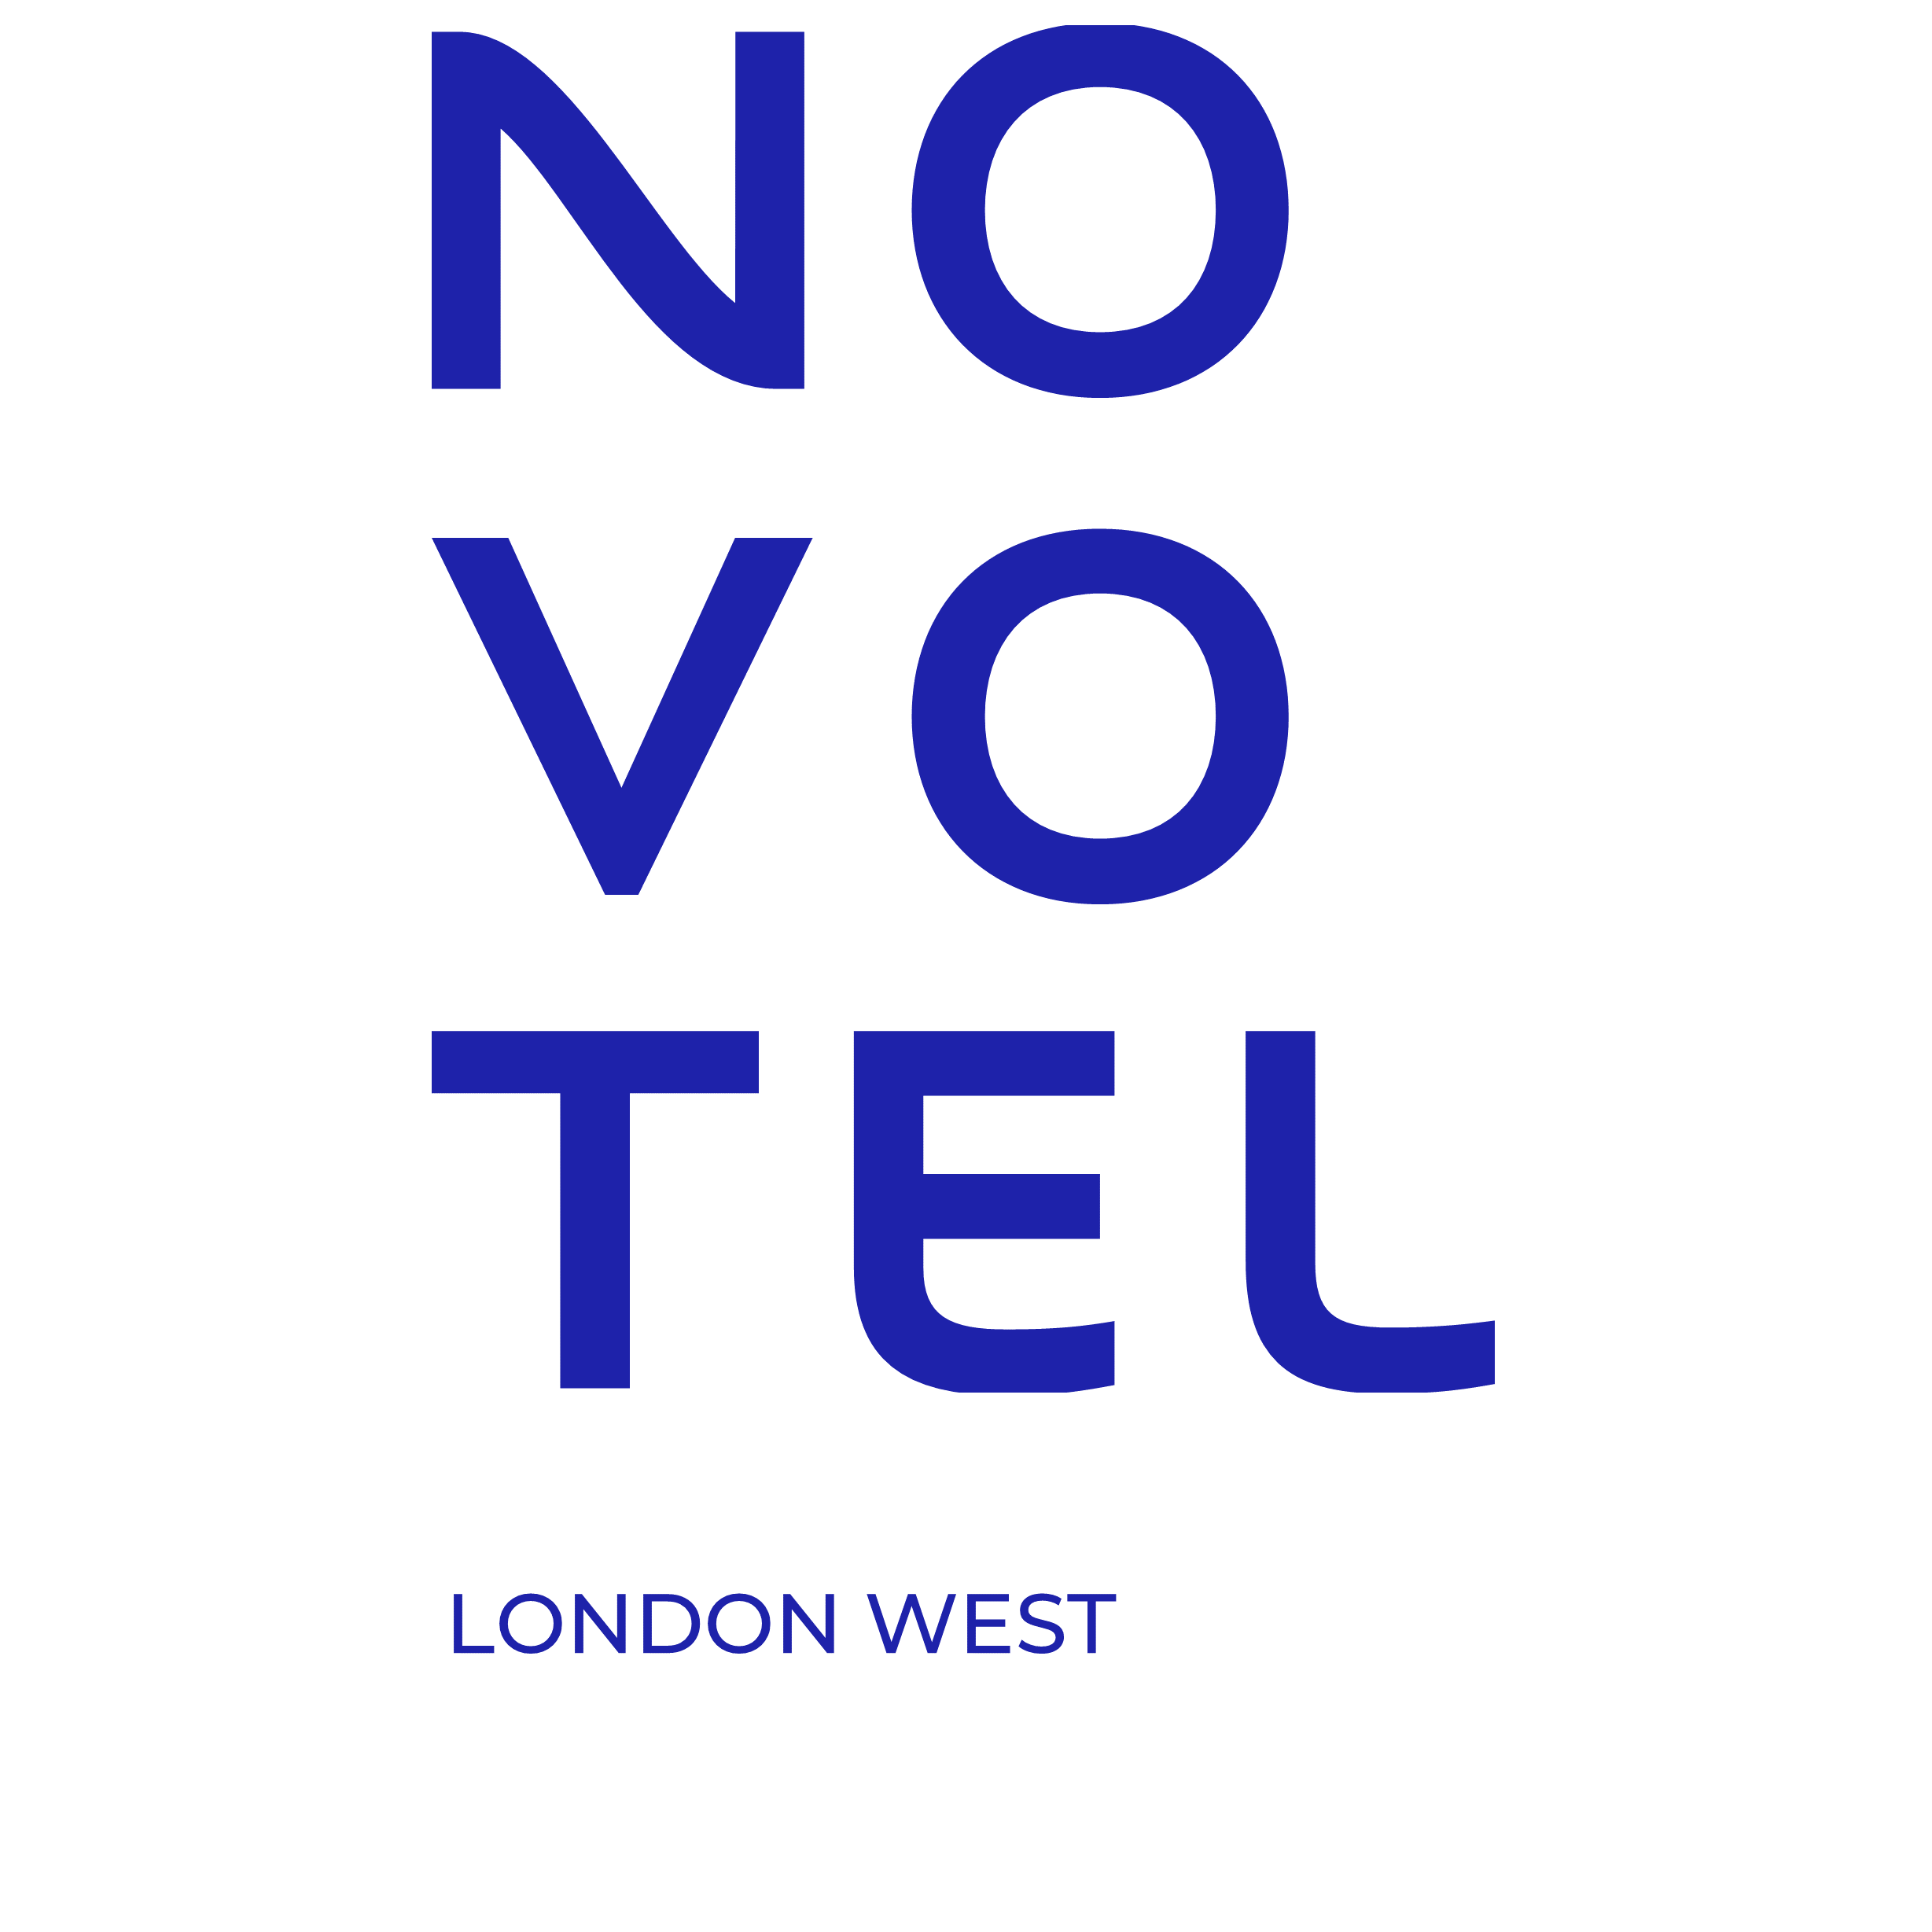 Novotel London West - London, London W6 8DR - 020 8741 1555 | ShowMeLocal.com